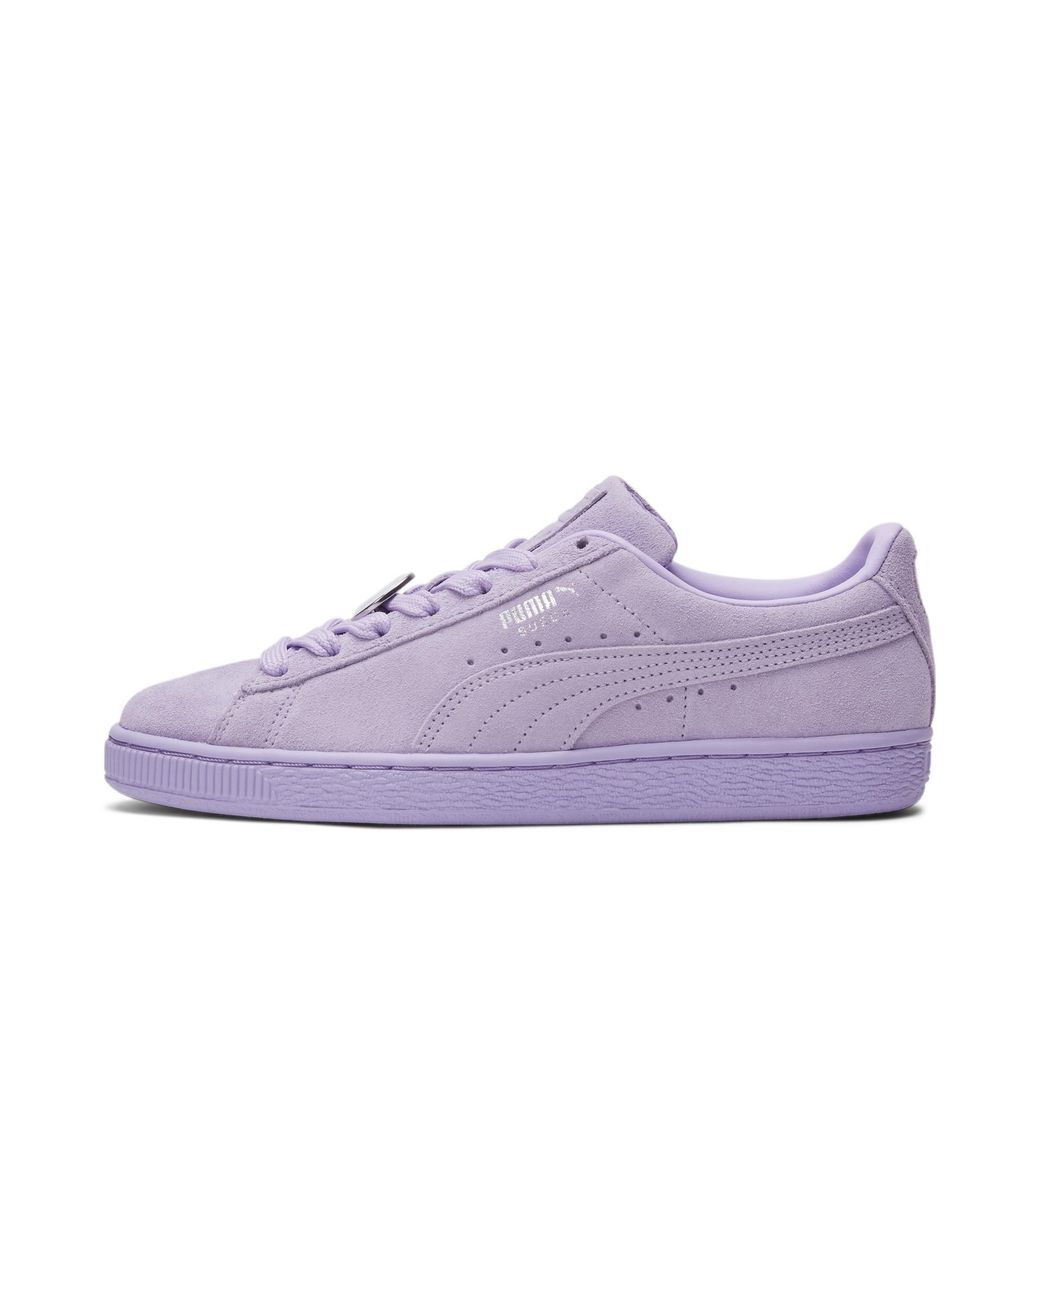 PUMA Suede Classic Iwd Sneakers in Purple | Lyst